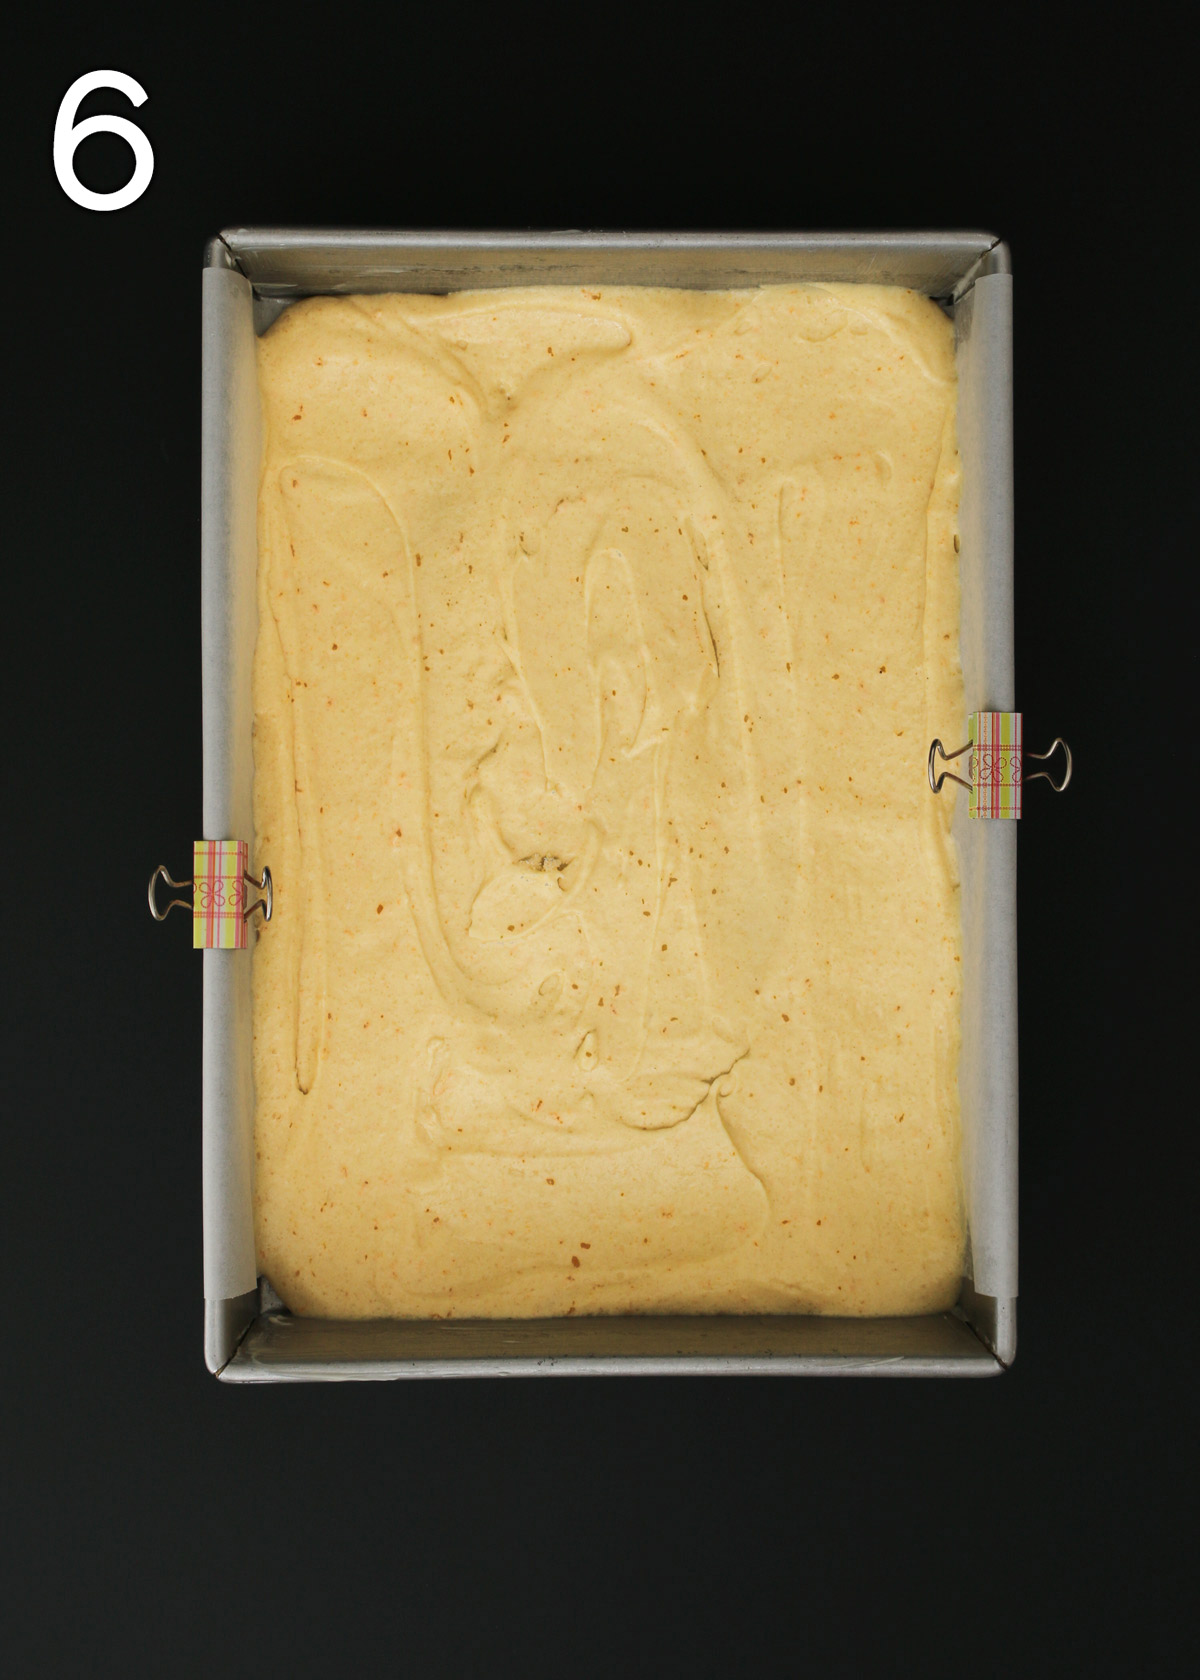 cake batter spread in prepared pan.